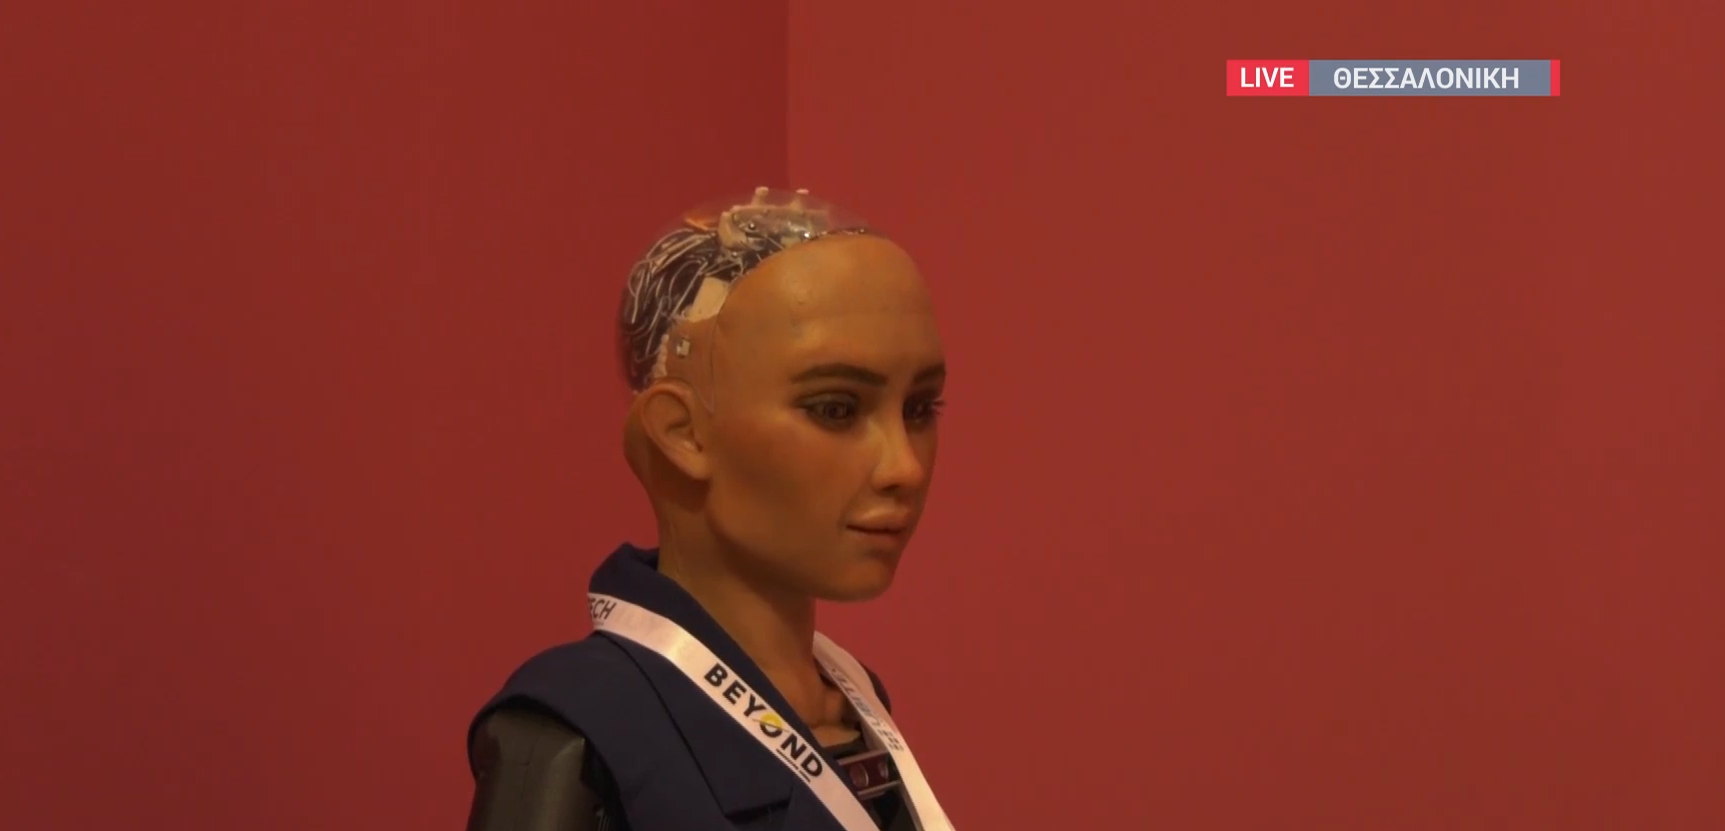 Sophia: To πιο διάσημο ρομπότ τεχνητής νοημοσύνης για πρώτη φορά στη Θεσσαλονίκη